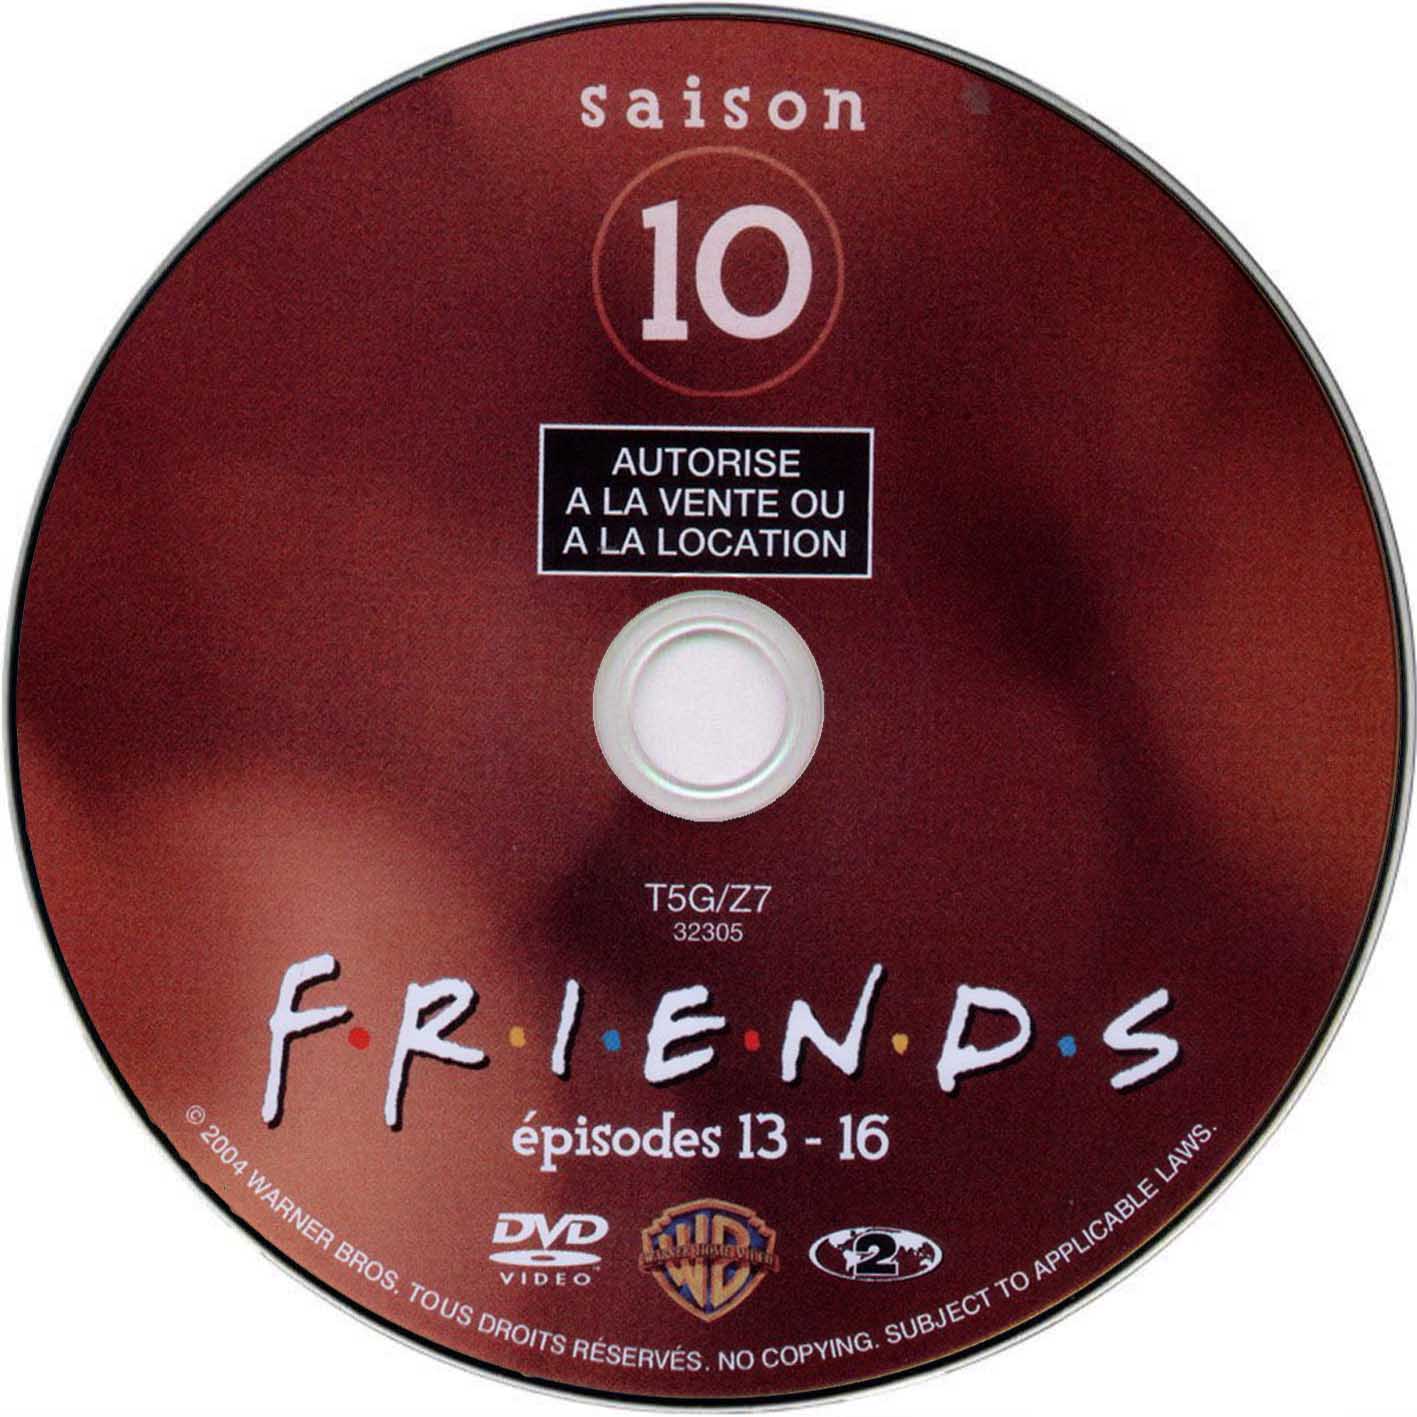 Friends saison 10 (disc 4)